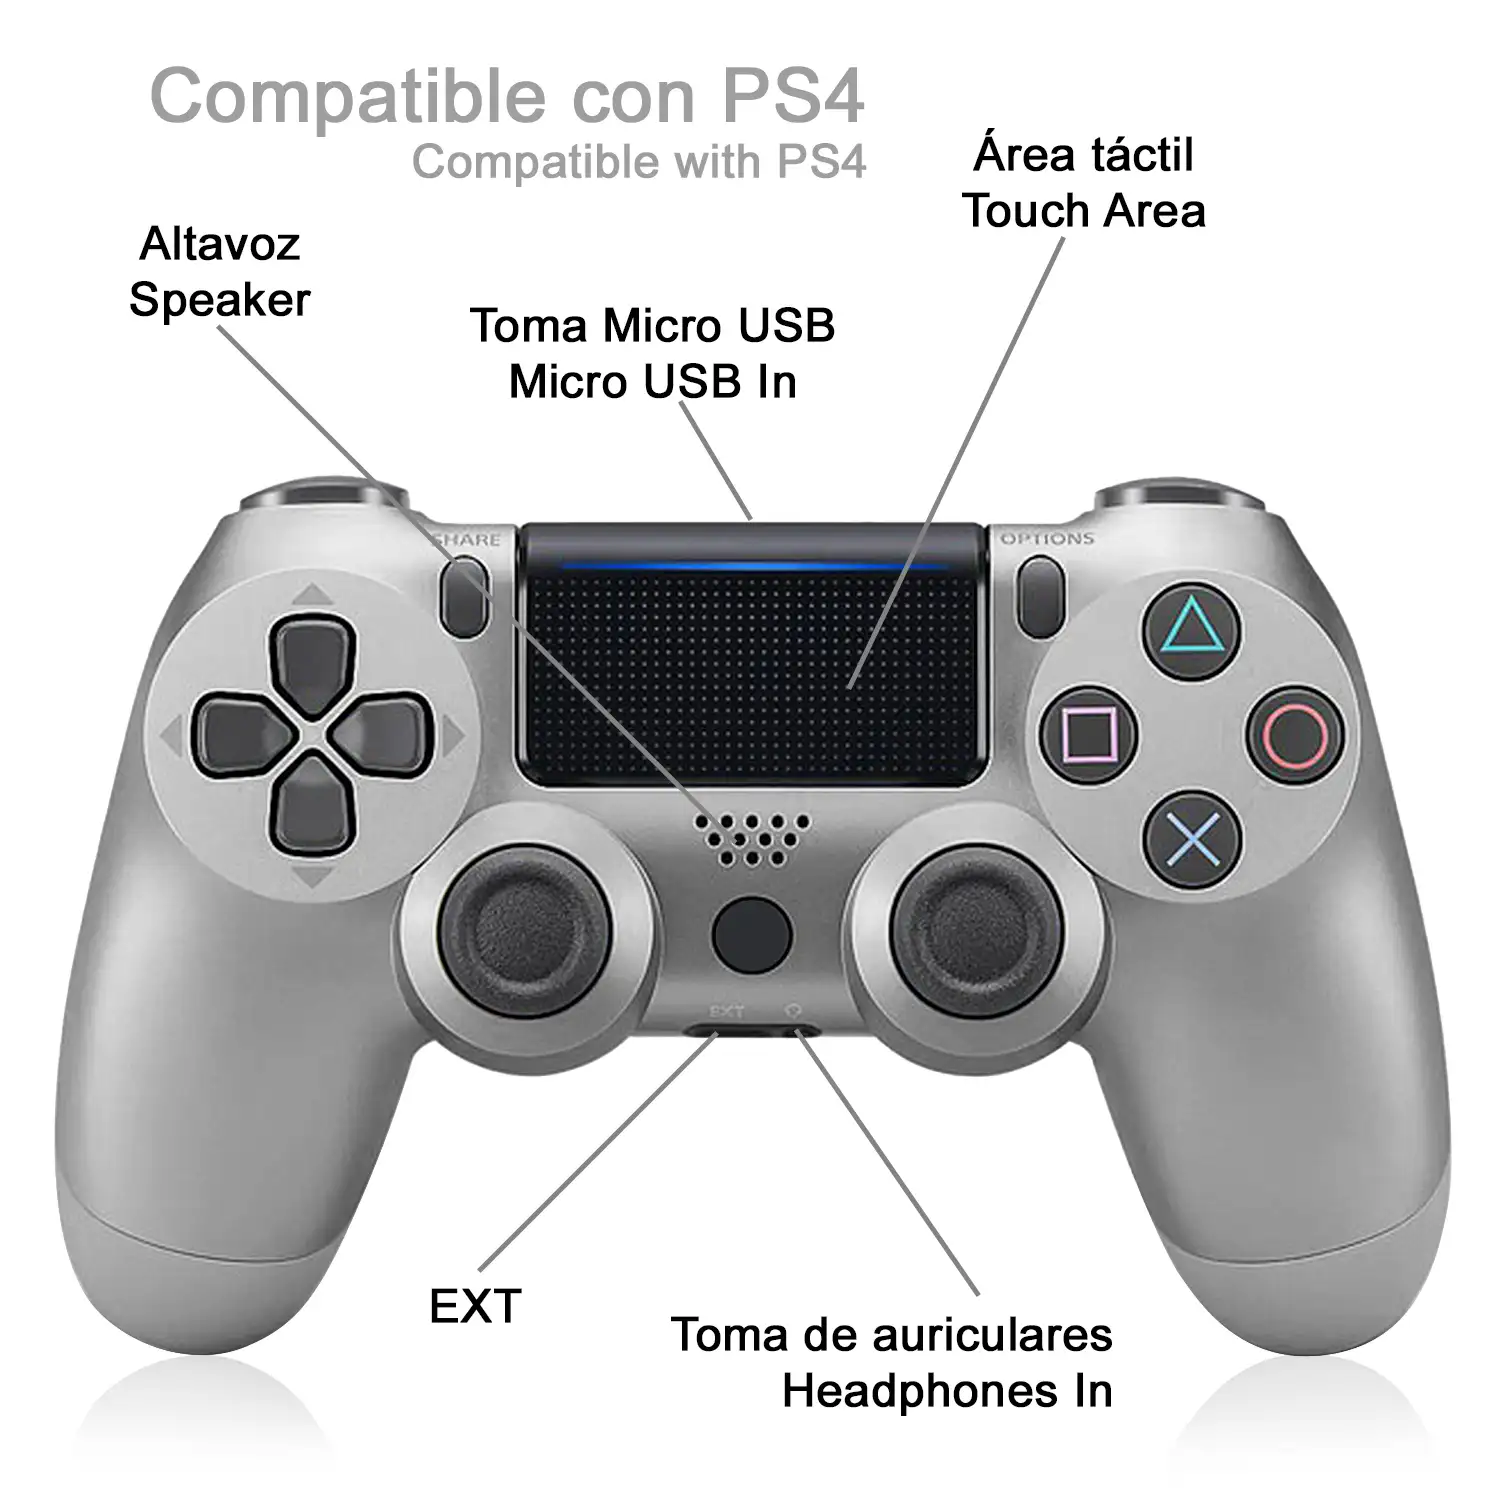 Mando inalámbrico con vibración compatible con PS4. Funciones completas.